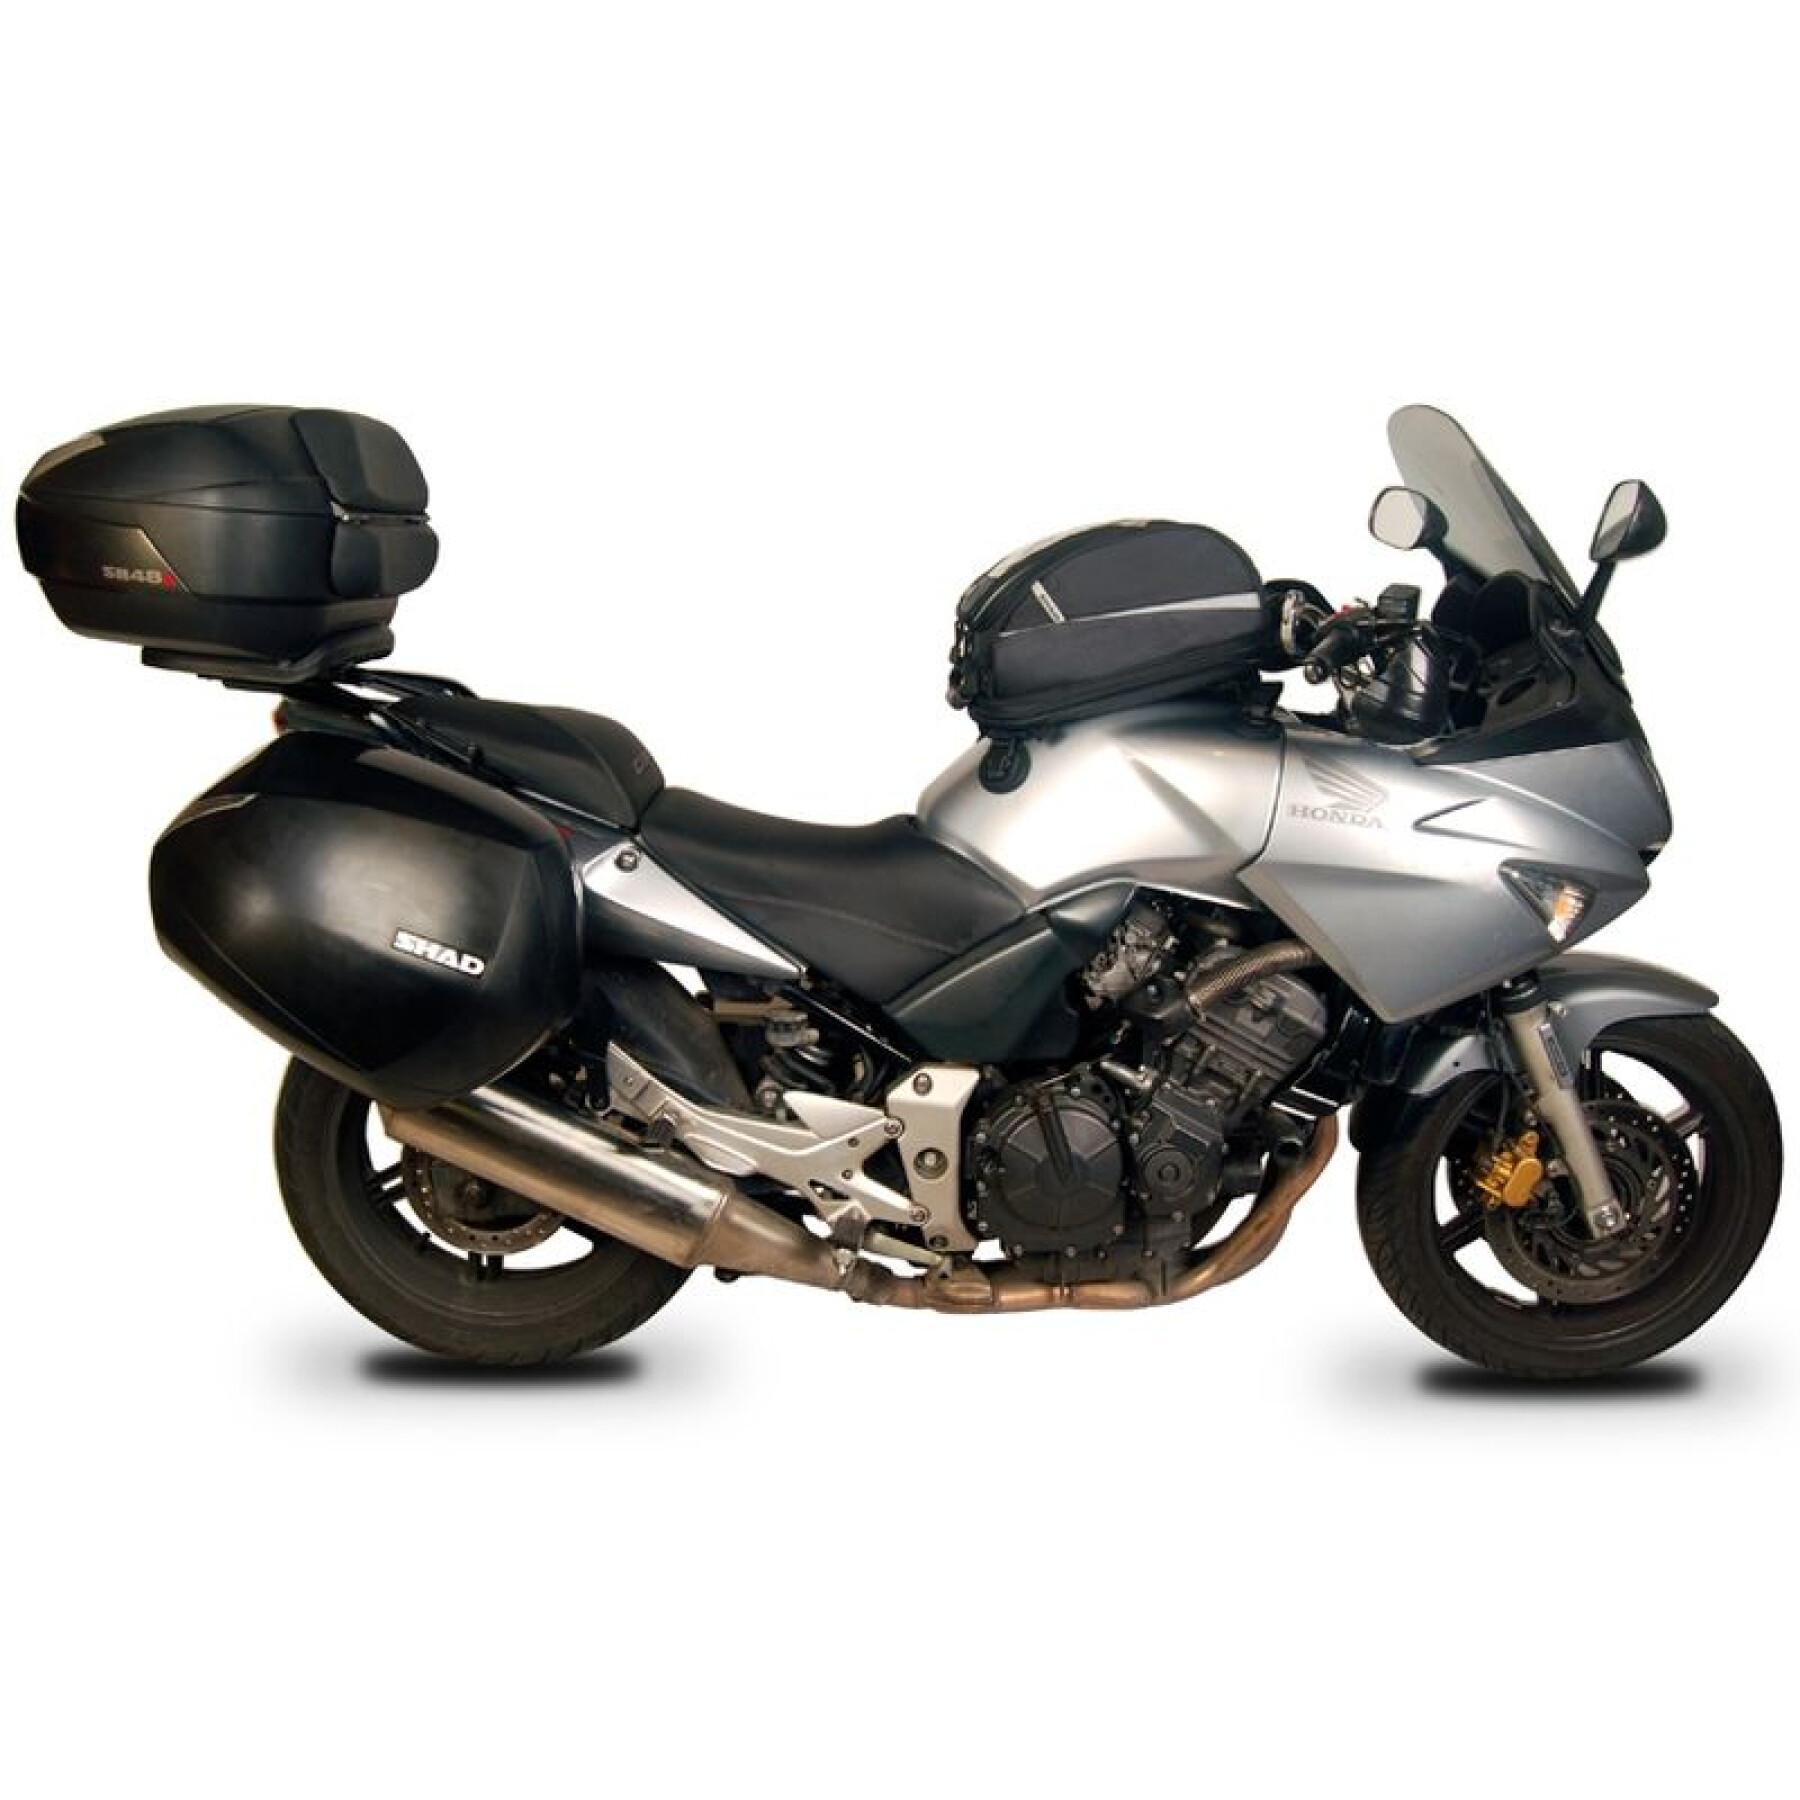 Wspornik obudowy motocykla Shad 3P System Honda Cbf 600 S/N (04 TO 12)